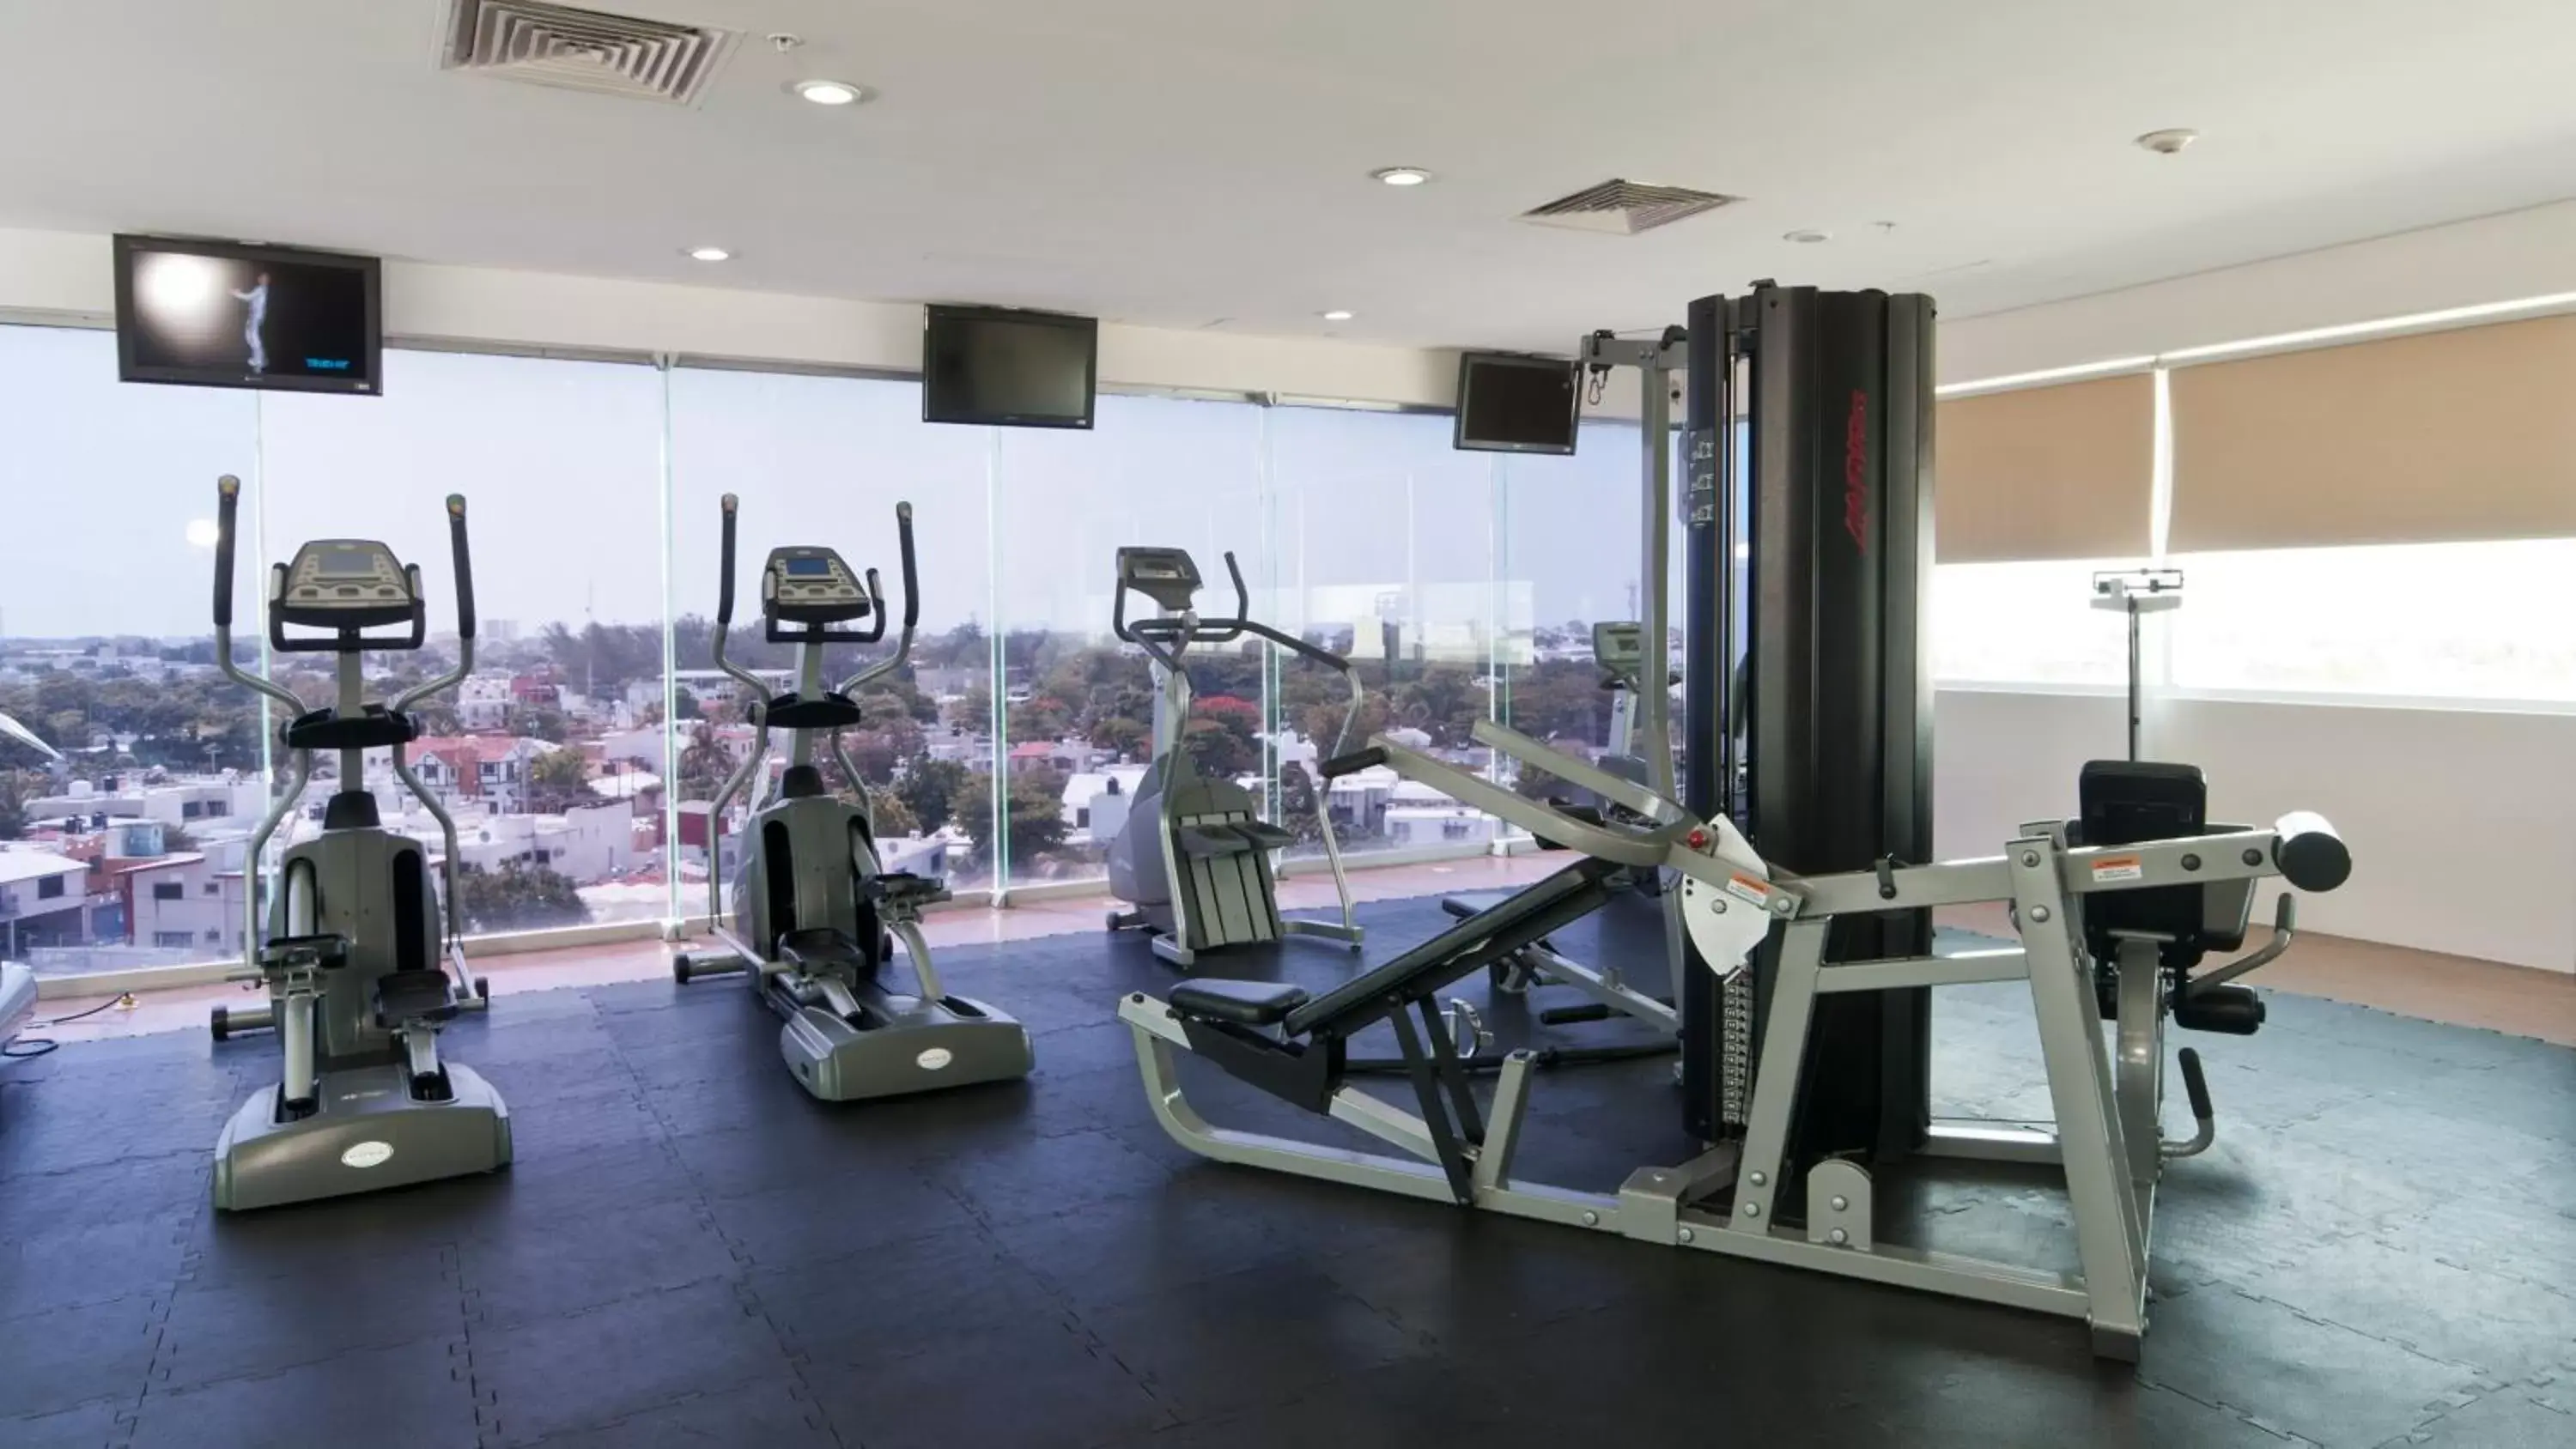 Fitness centre/facilities, Fitness Center/Facilities in Holiday Inn Express Ciudad Del Carmen, an IHG Hotel